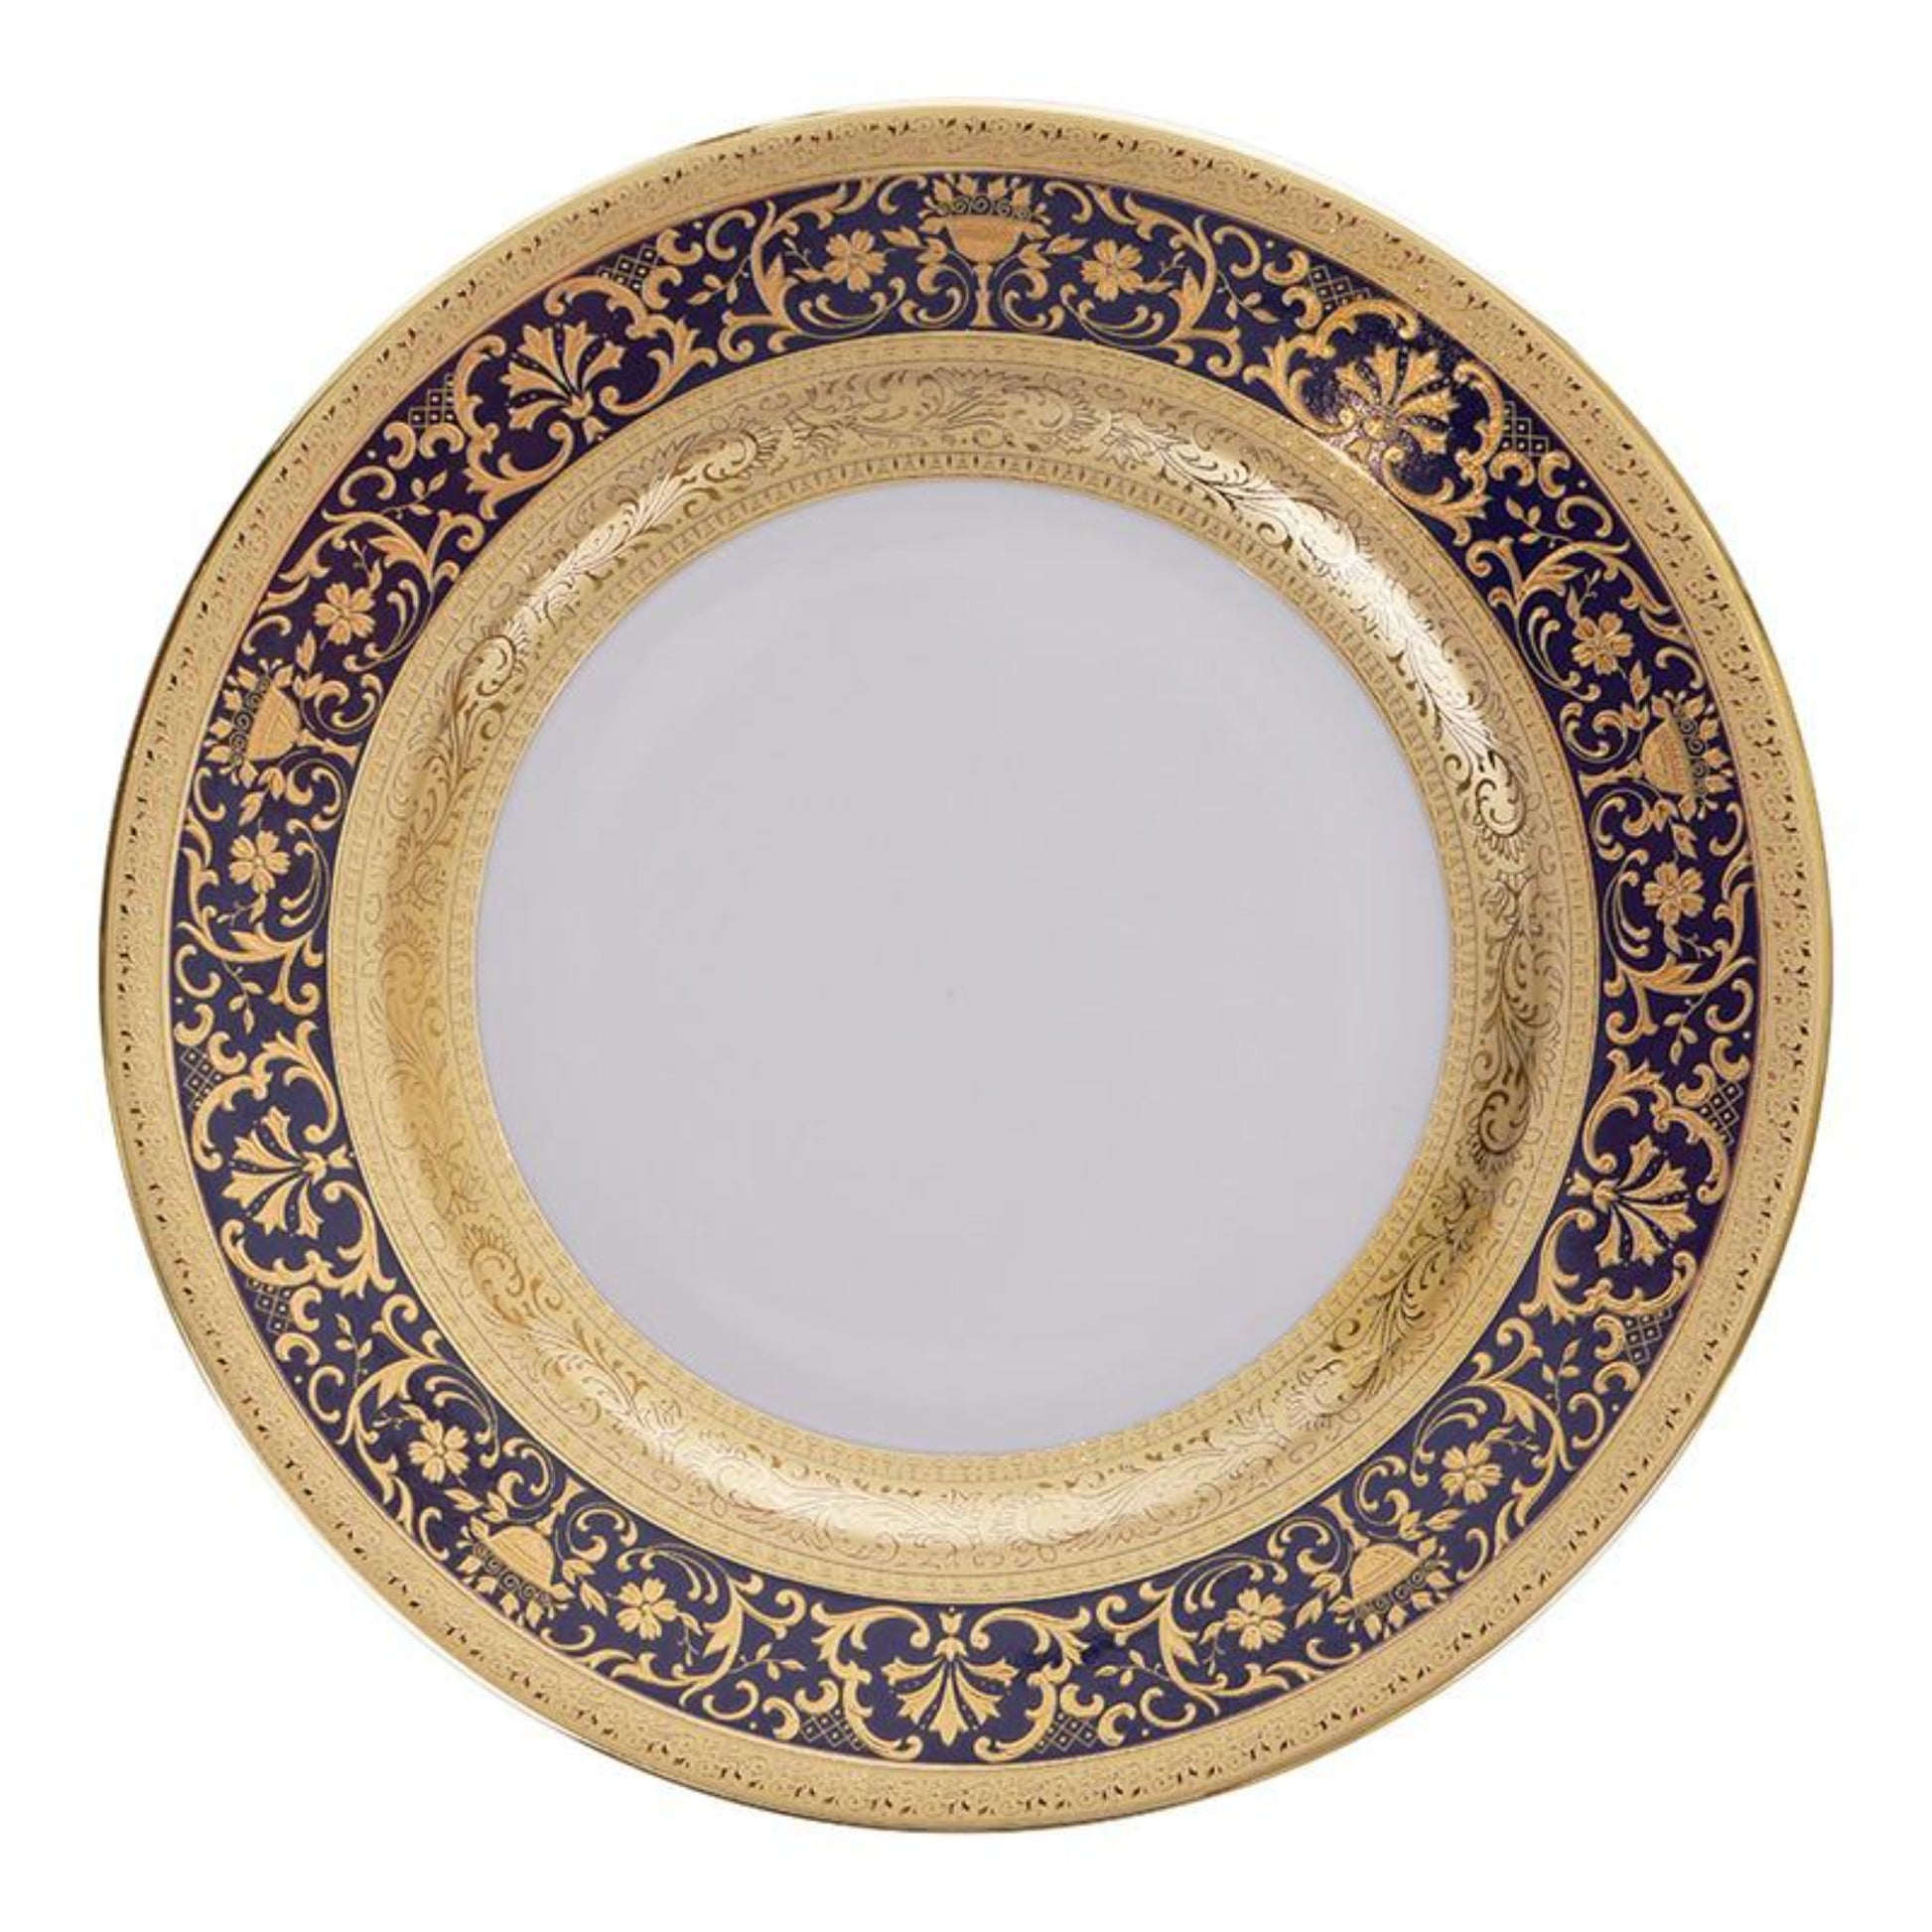 Falkenporzellan Dinner Set 112pcs - Porcelain - Cobalt Blue & Gold - 13000238